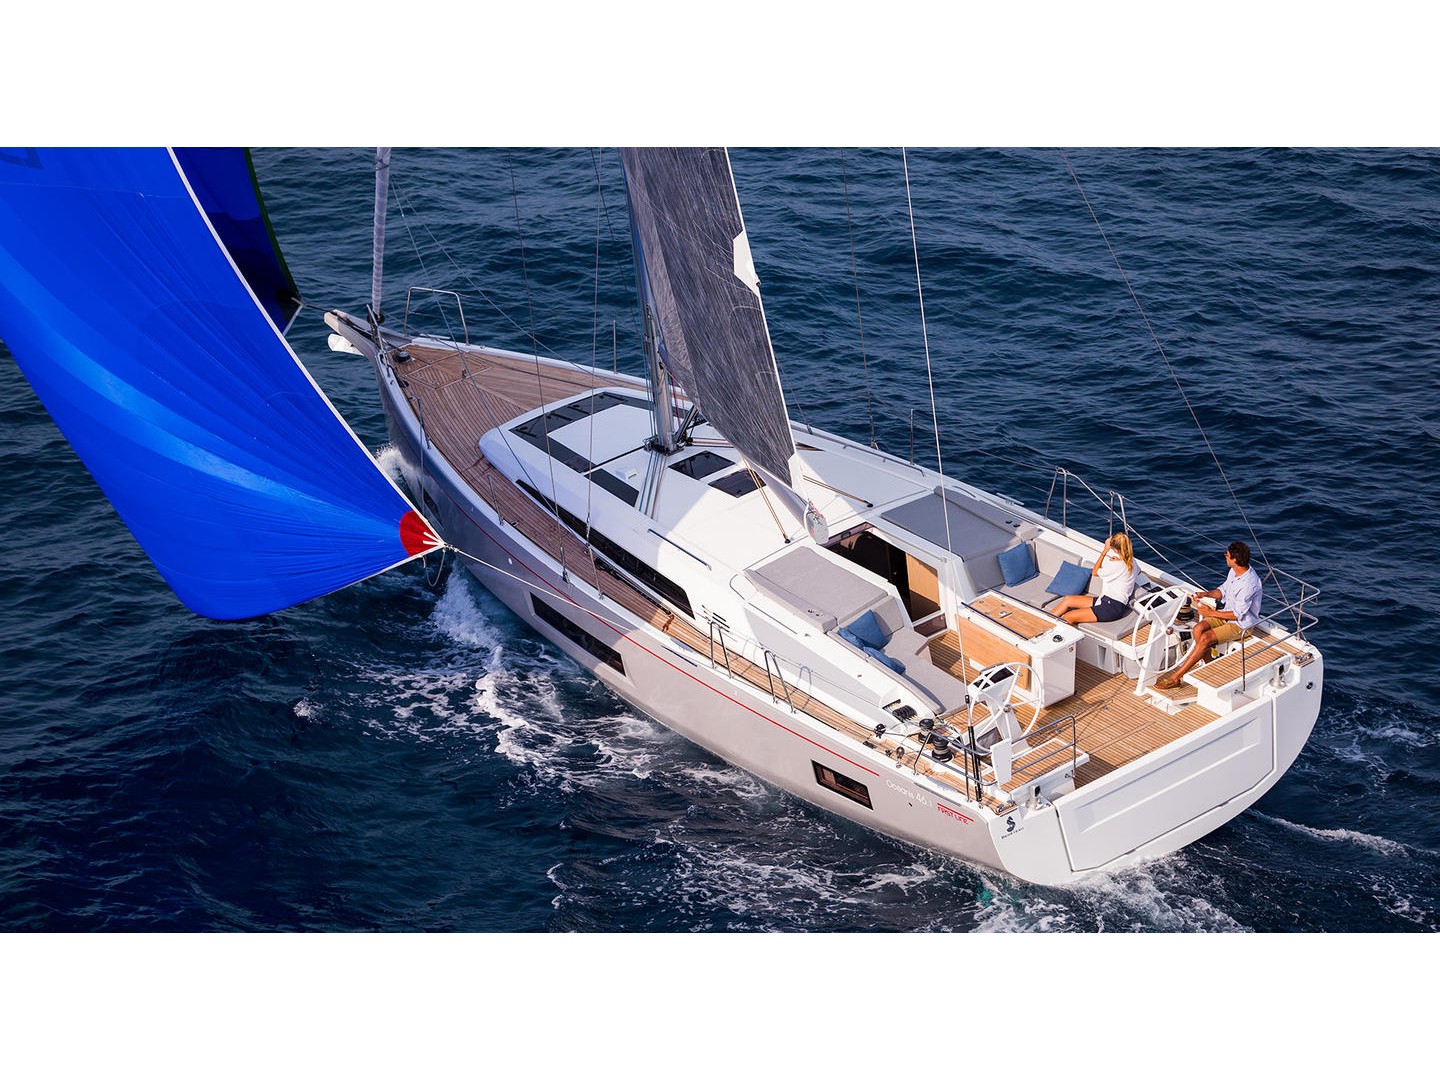 Yacht charter Oceanis 46.1 - Croatia, Central Dalmatia, Skradin